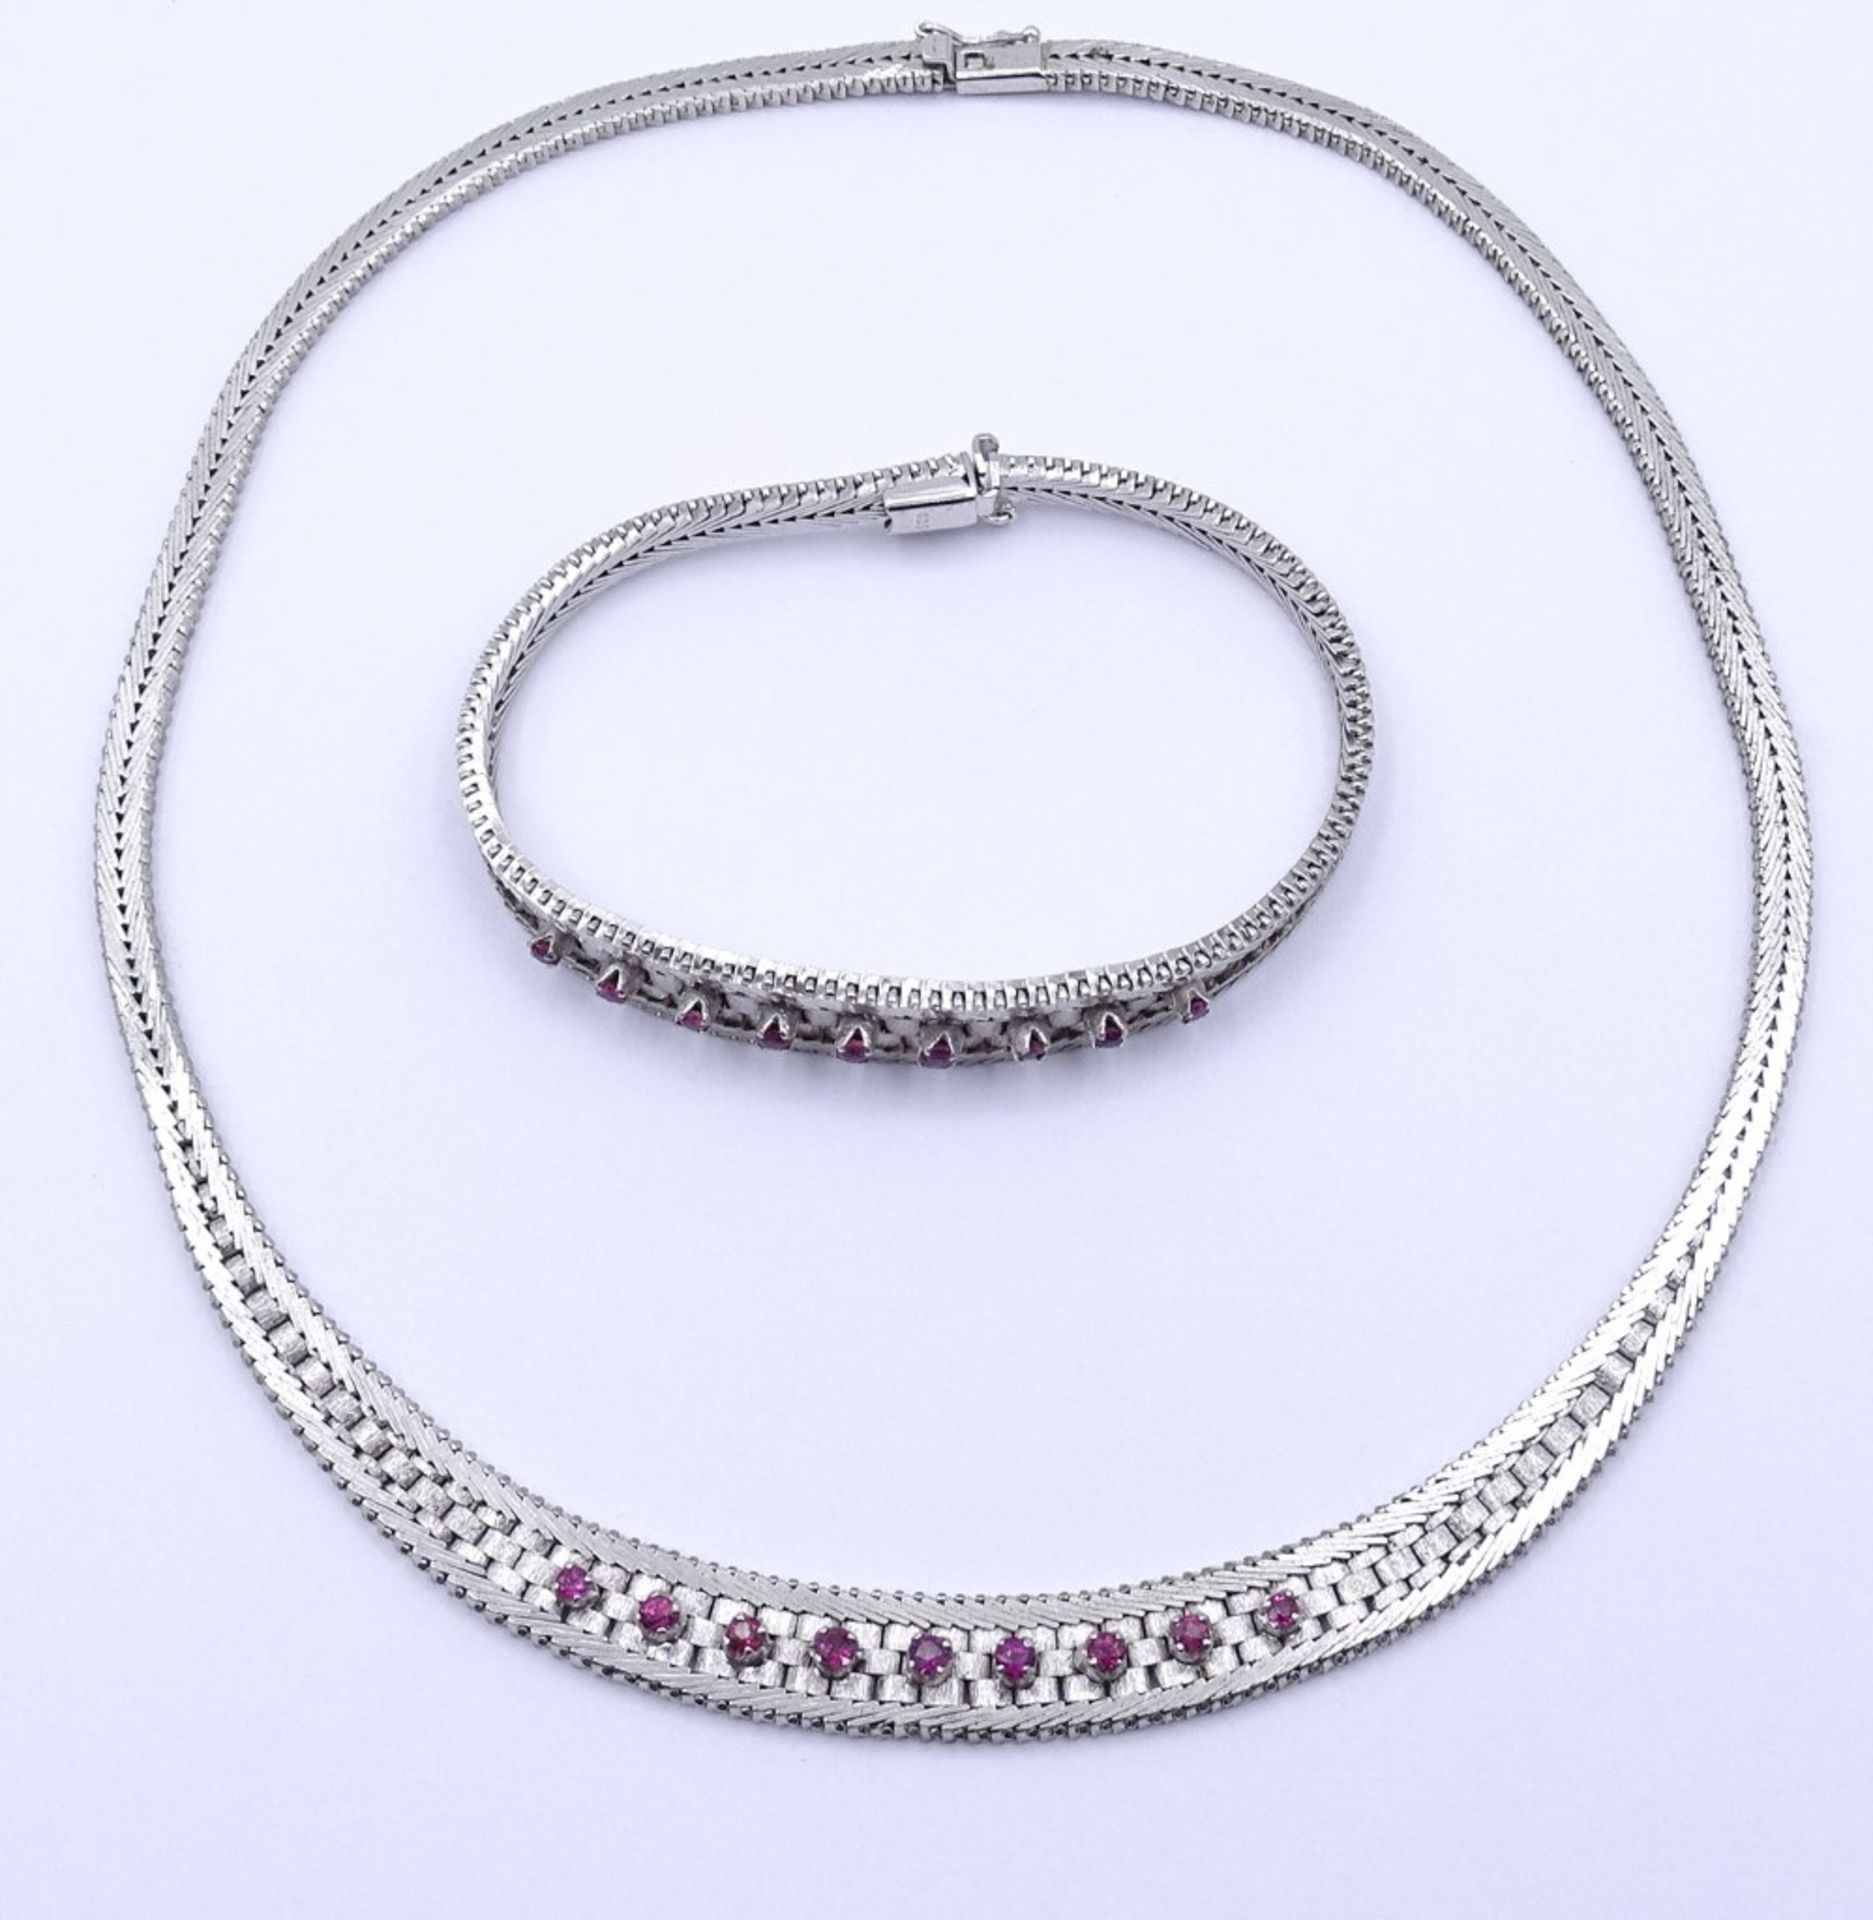 Schmuckset mit Rubinen, Silber 0.925, Halskette und Armband, zus.53,5g. - Bild 2 aus 5